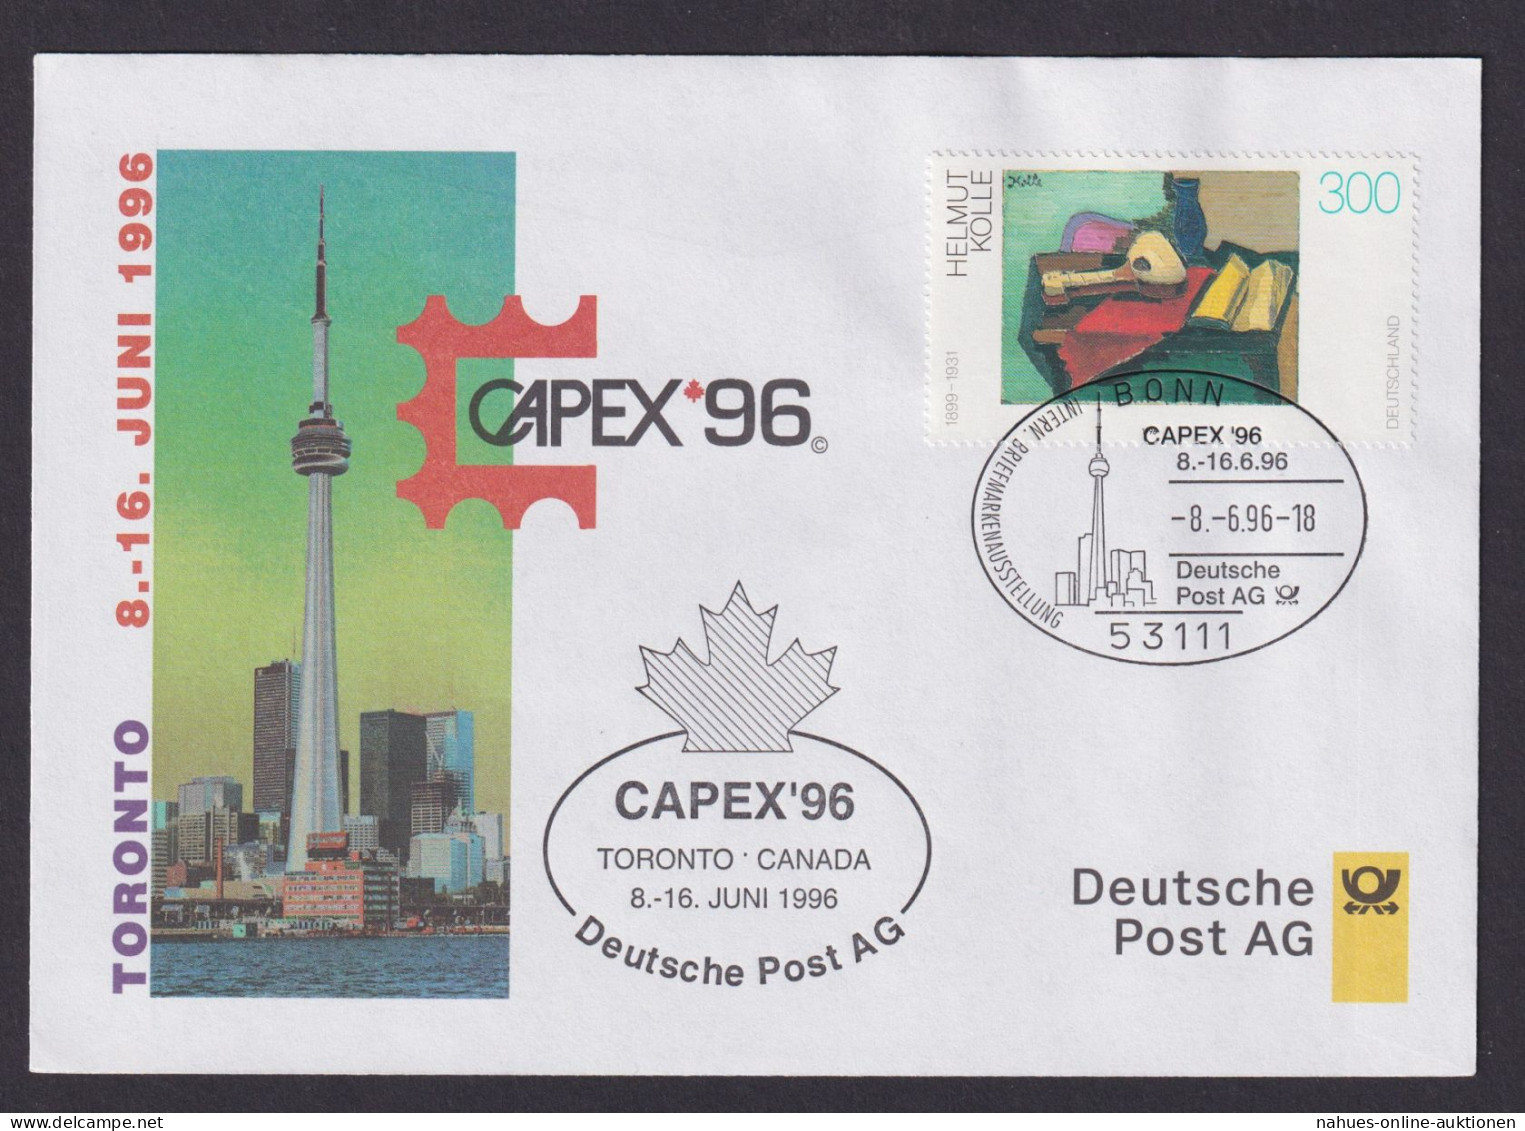 Philatelie Briefmarkenausstellung Capex Toronto Kanada 1996 SST Deutsche Post AG - Briefe U. Dokumente